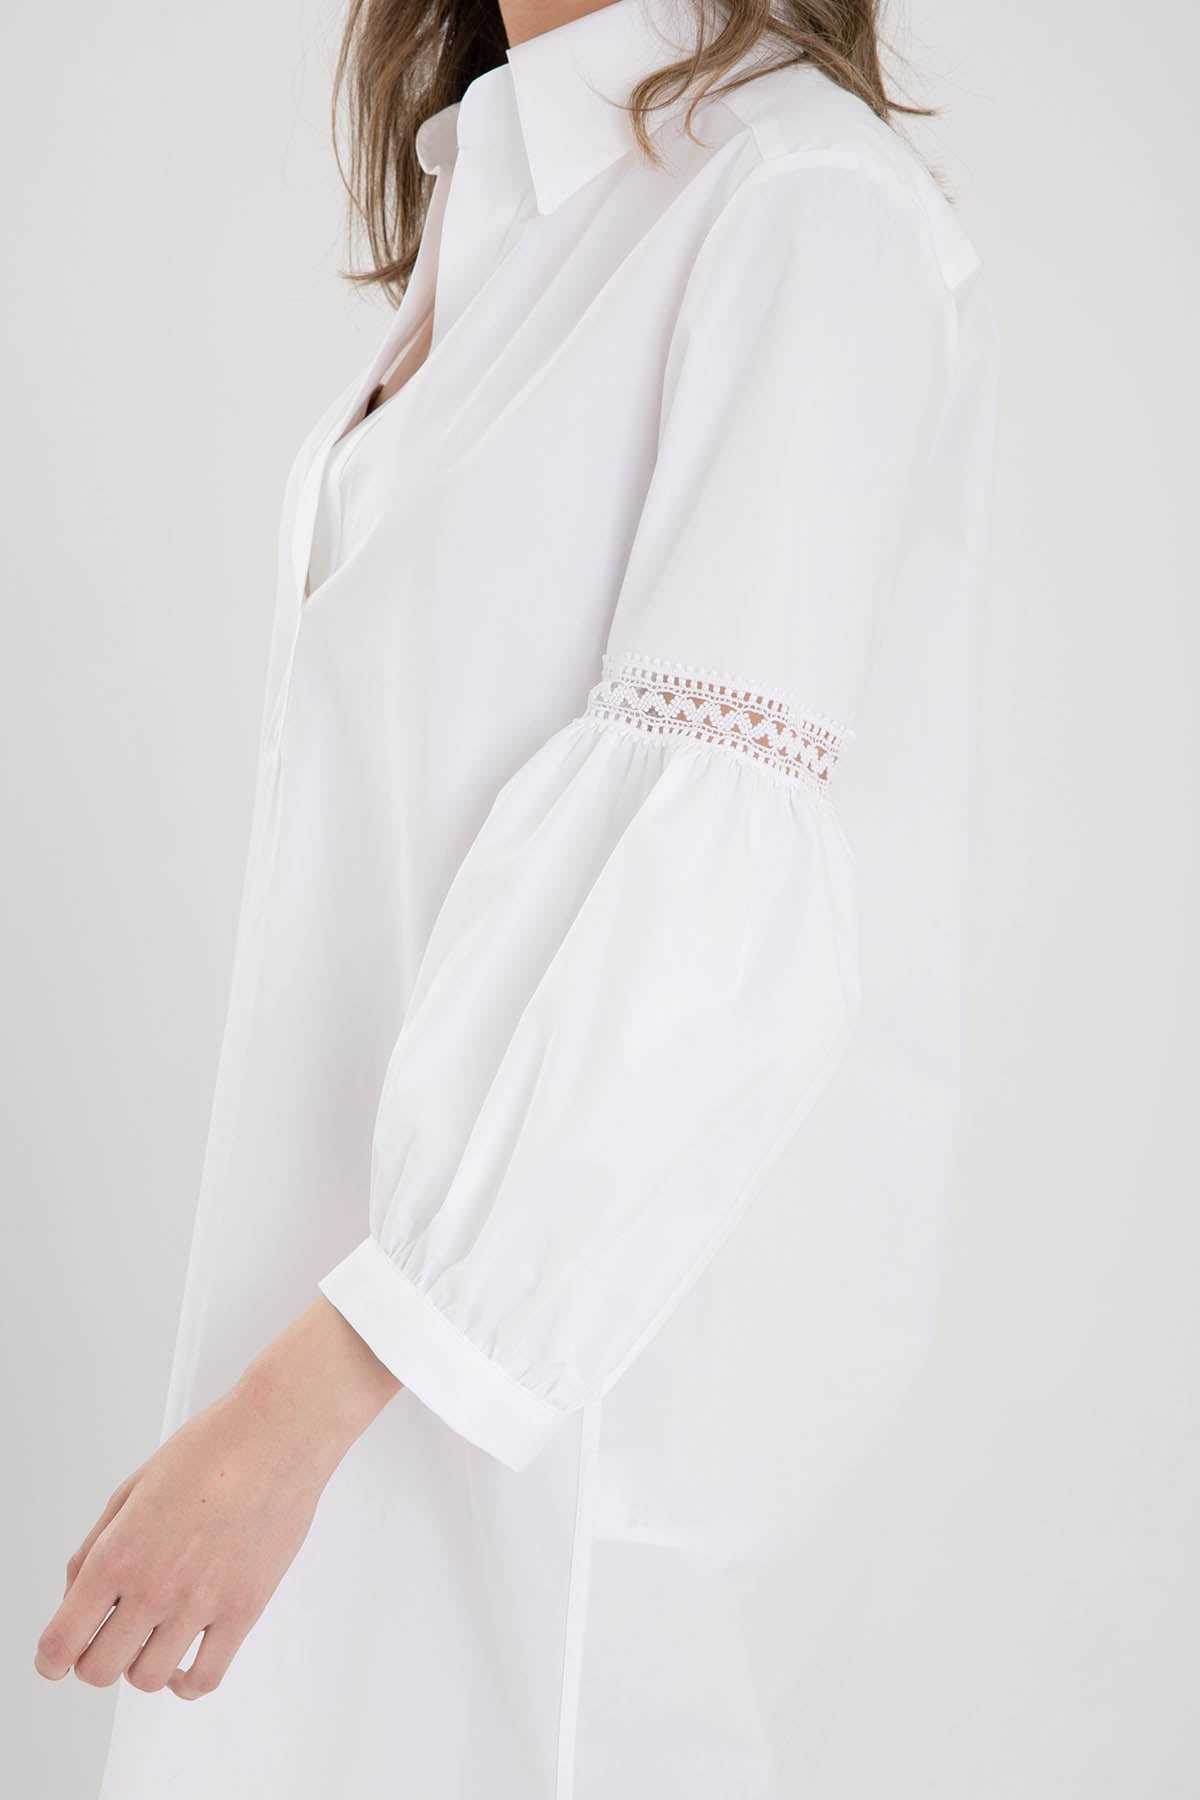 Dondup Balon Kol Gömlek Elbise-Libas Trendy Fashion Store